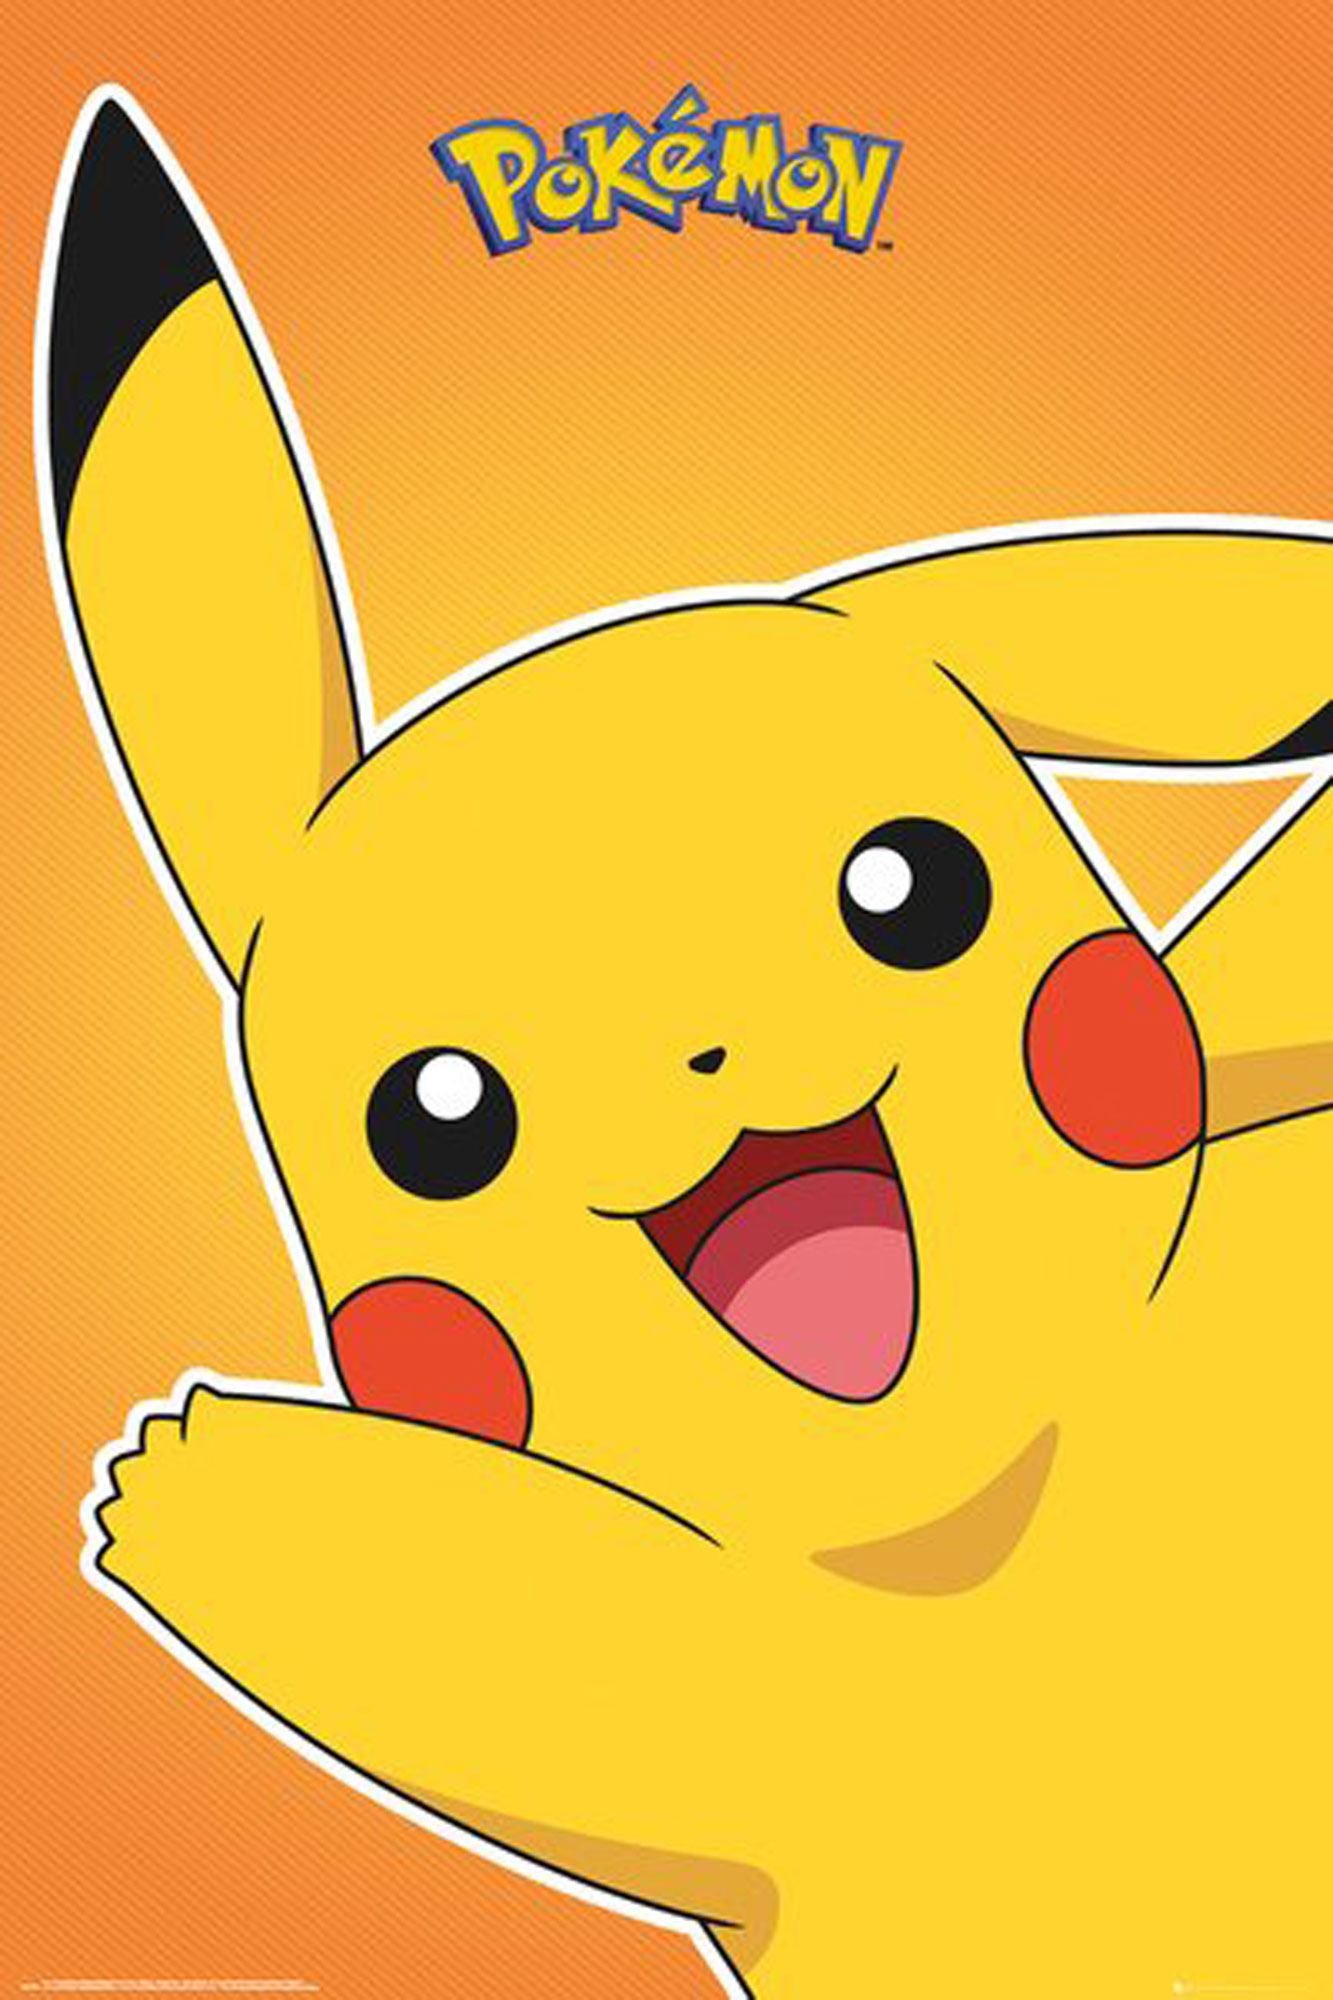 Pokemon - Pokémon - Pikachu 2 Motiv